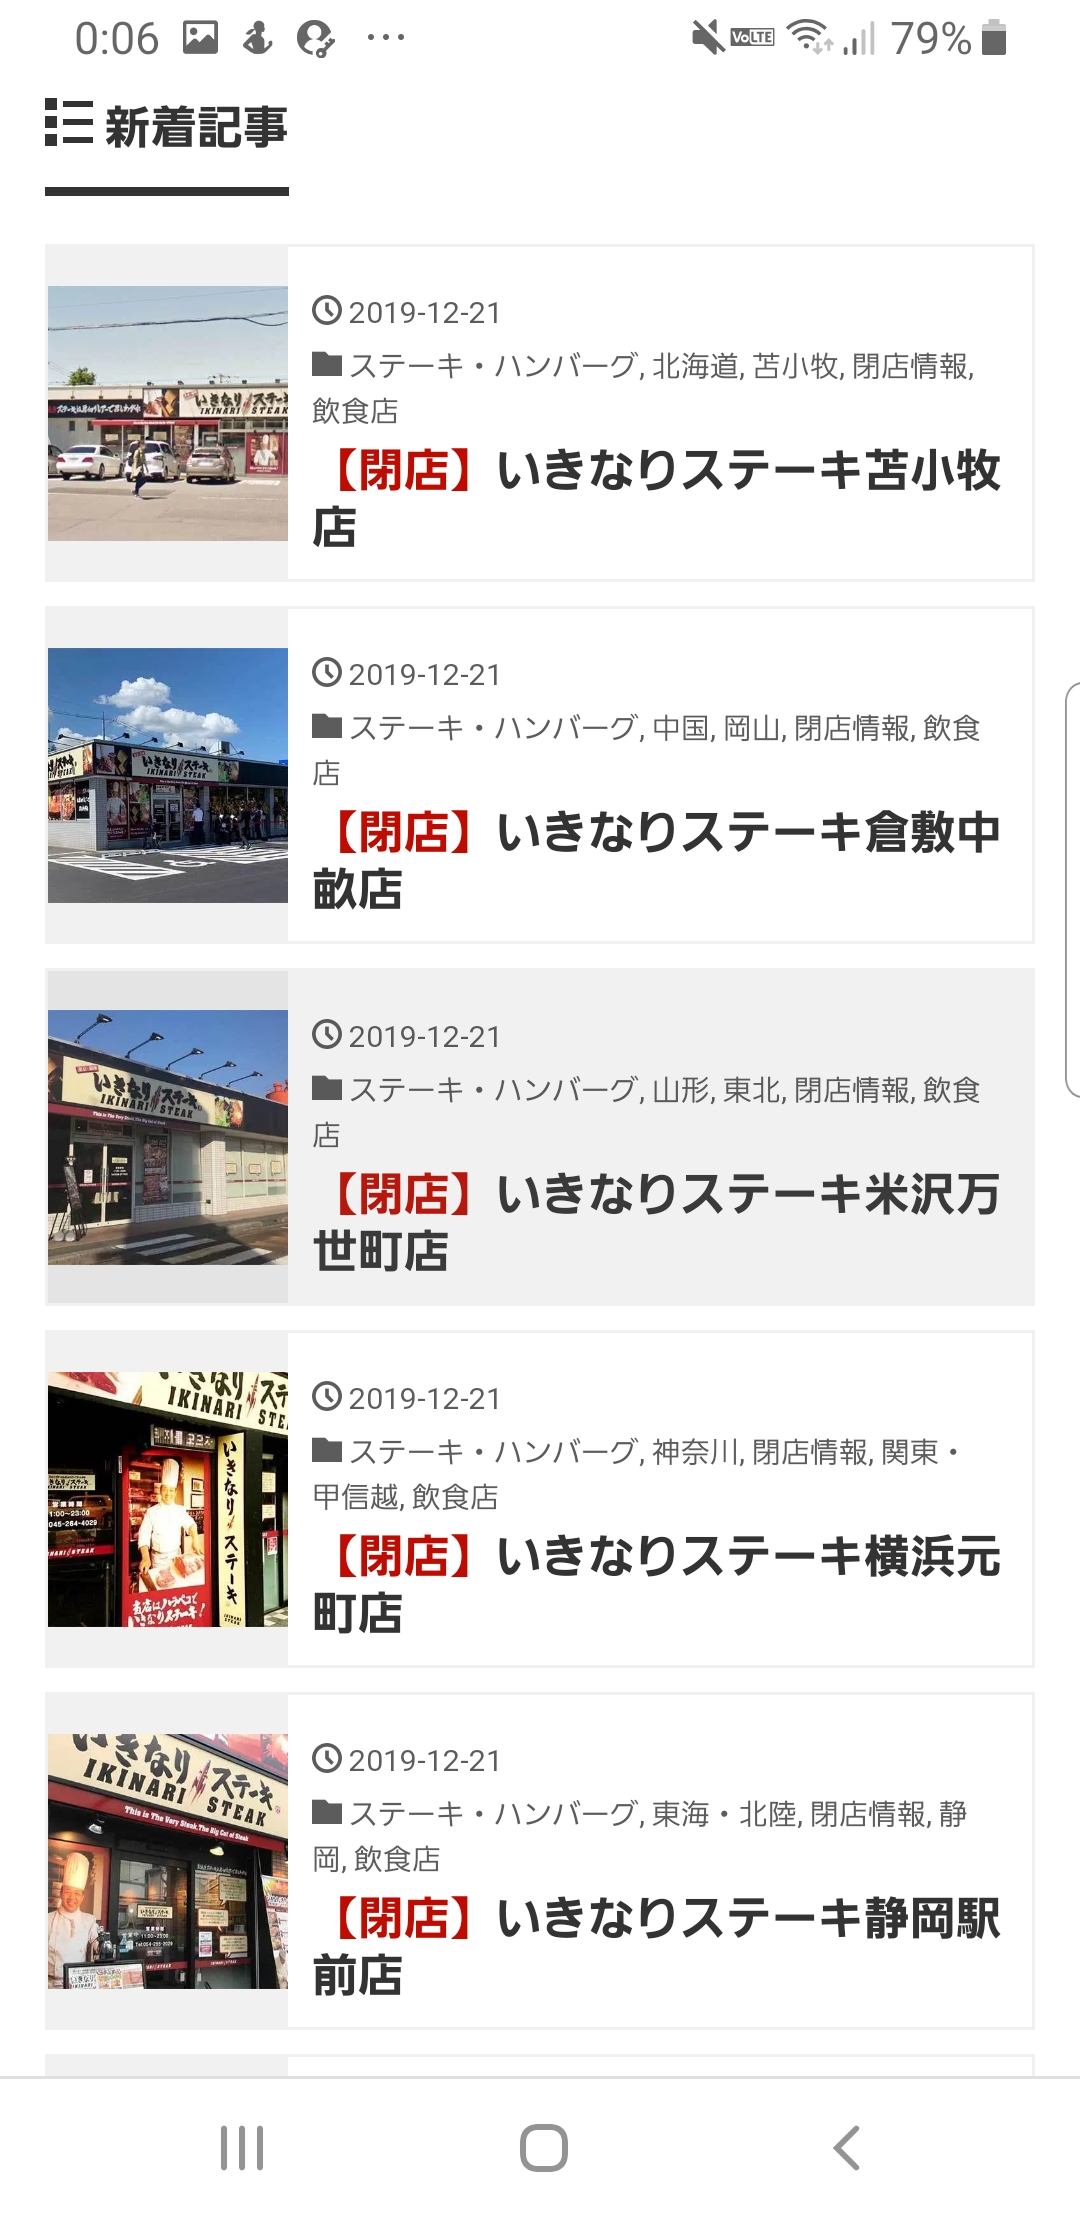 【画像】いきなりステーキの閉店情報がやばいｗｗｗｗｗｗｗｗｗｗｗ